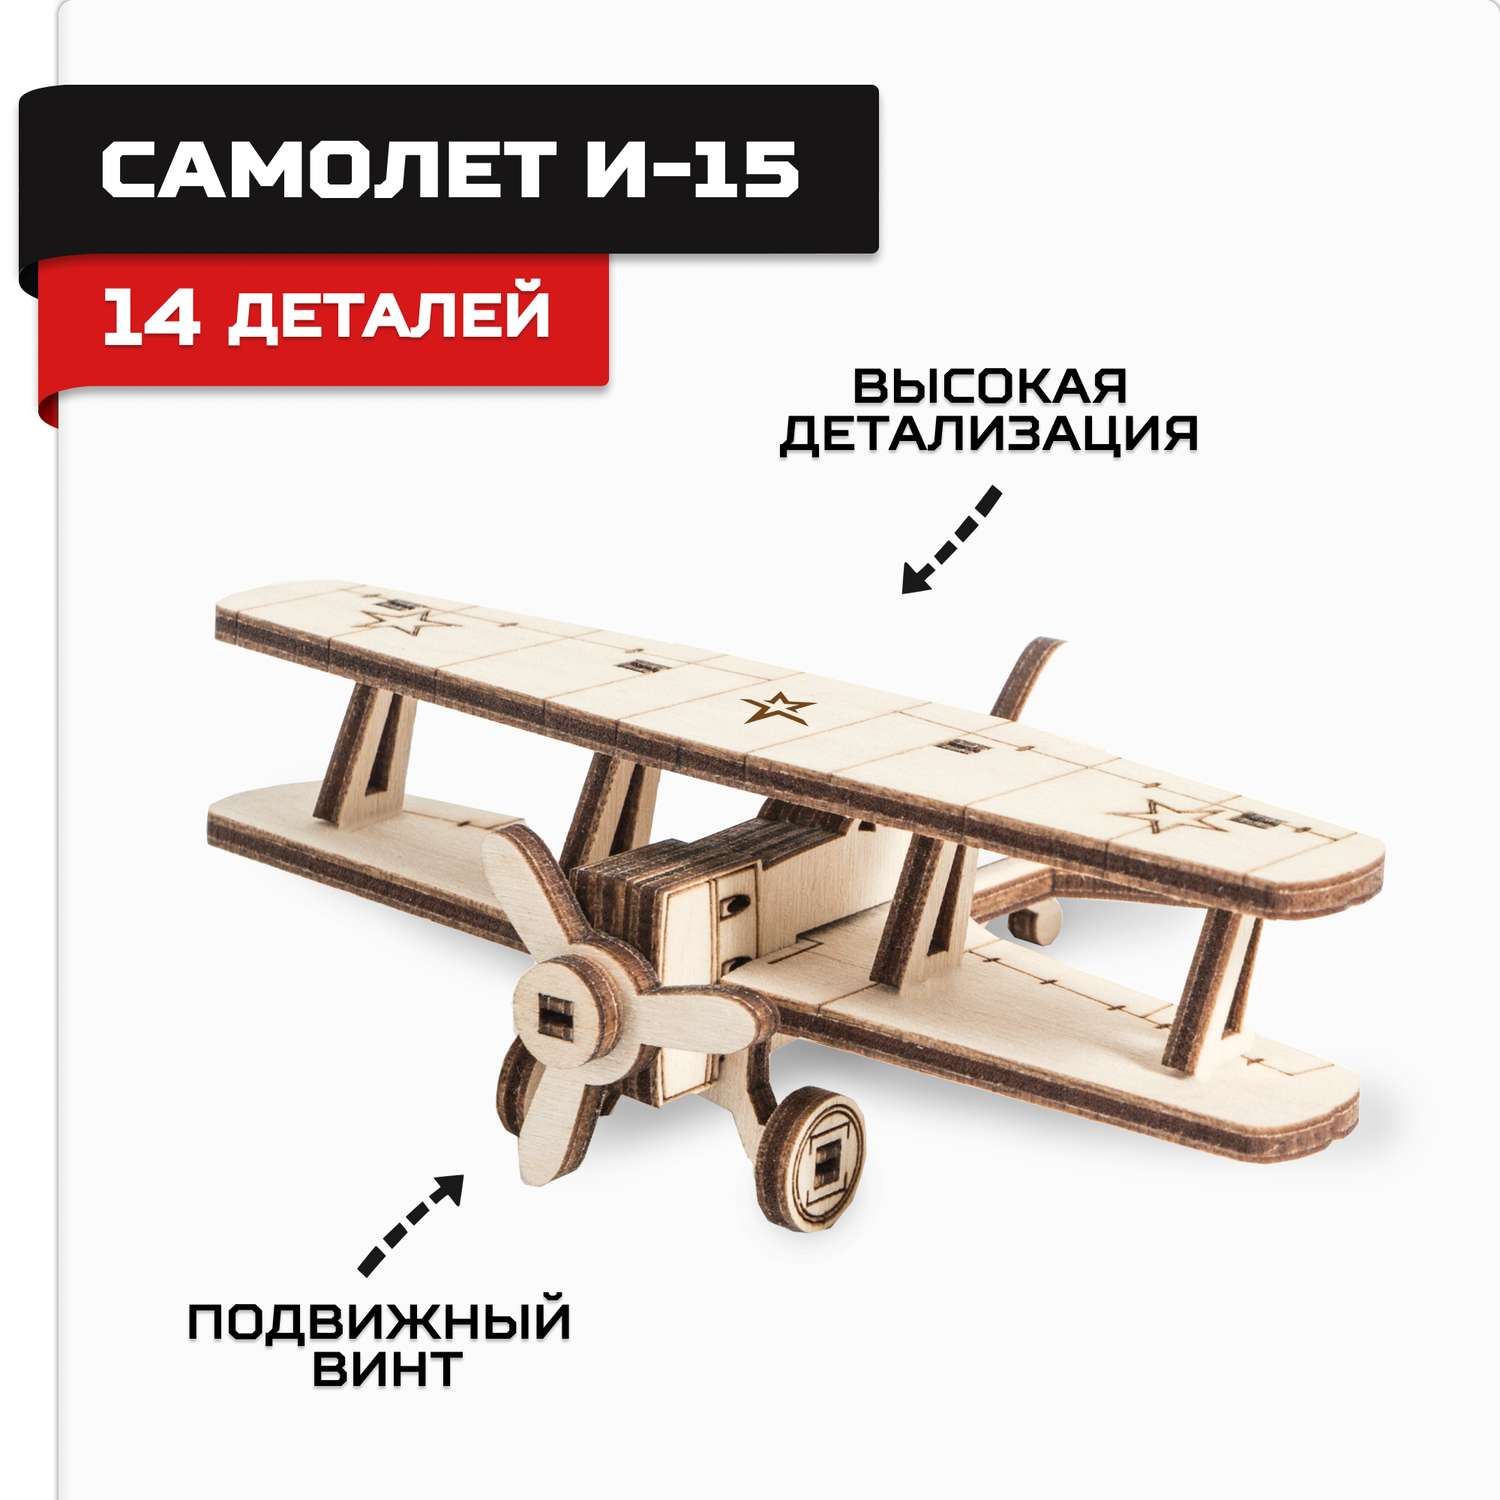 Конструктор Армия России Самолет И-15 TY339-A22 - фото 1